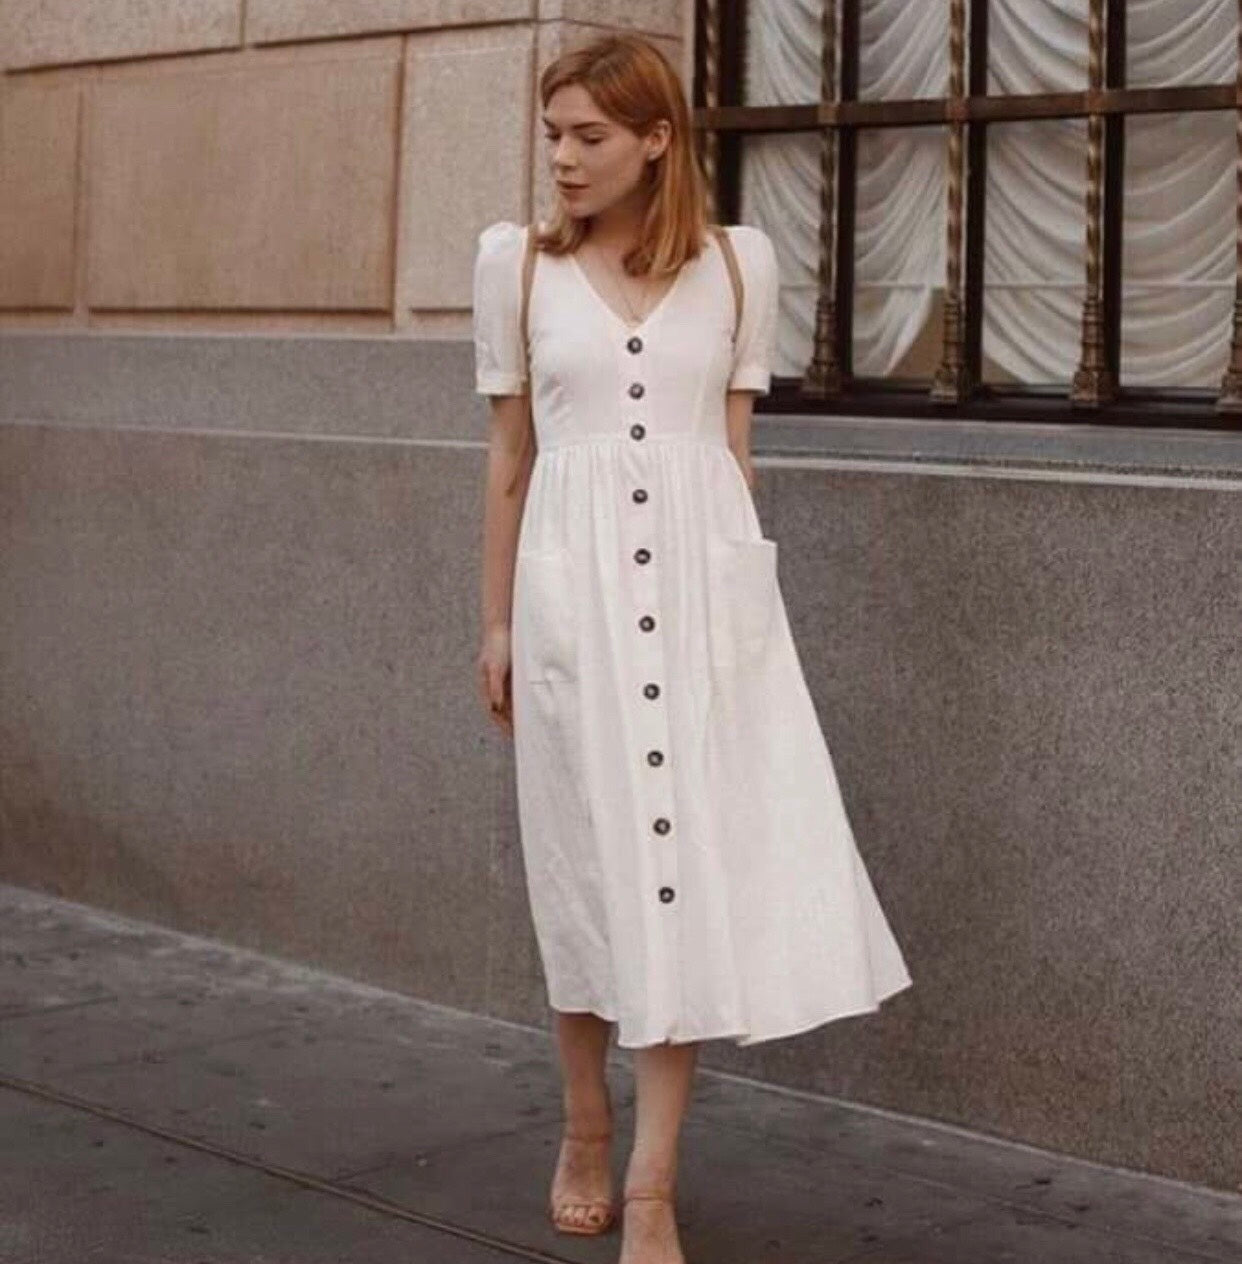 white button dress